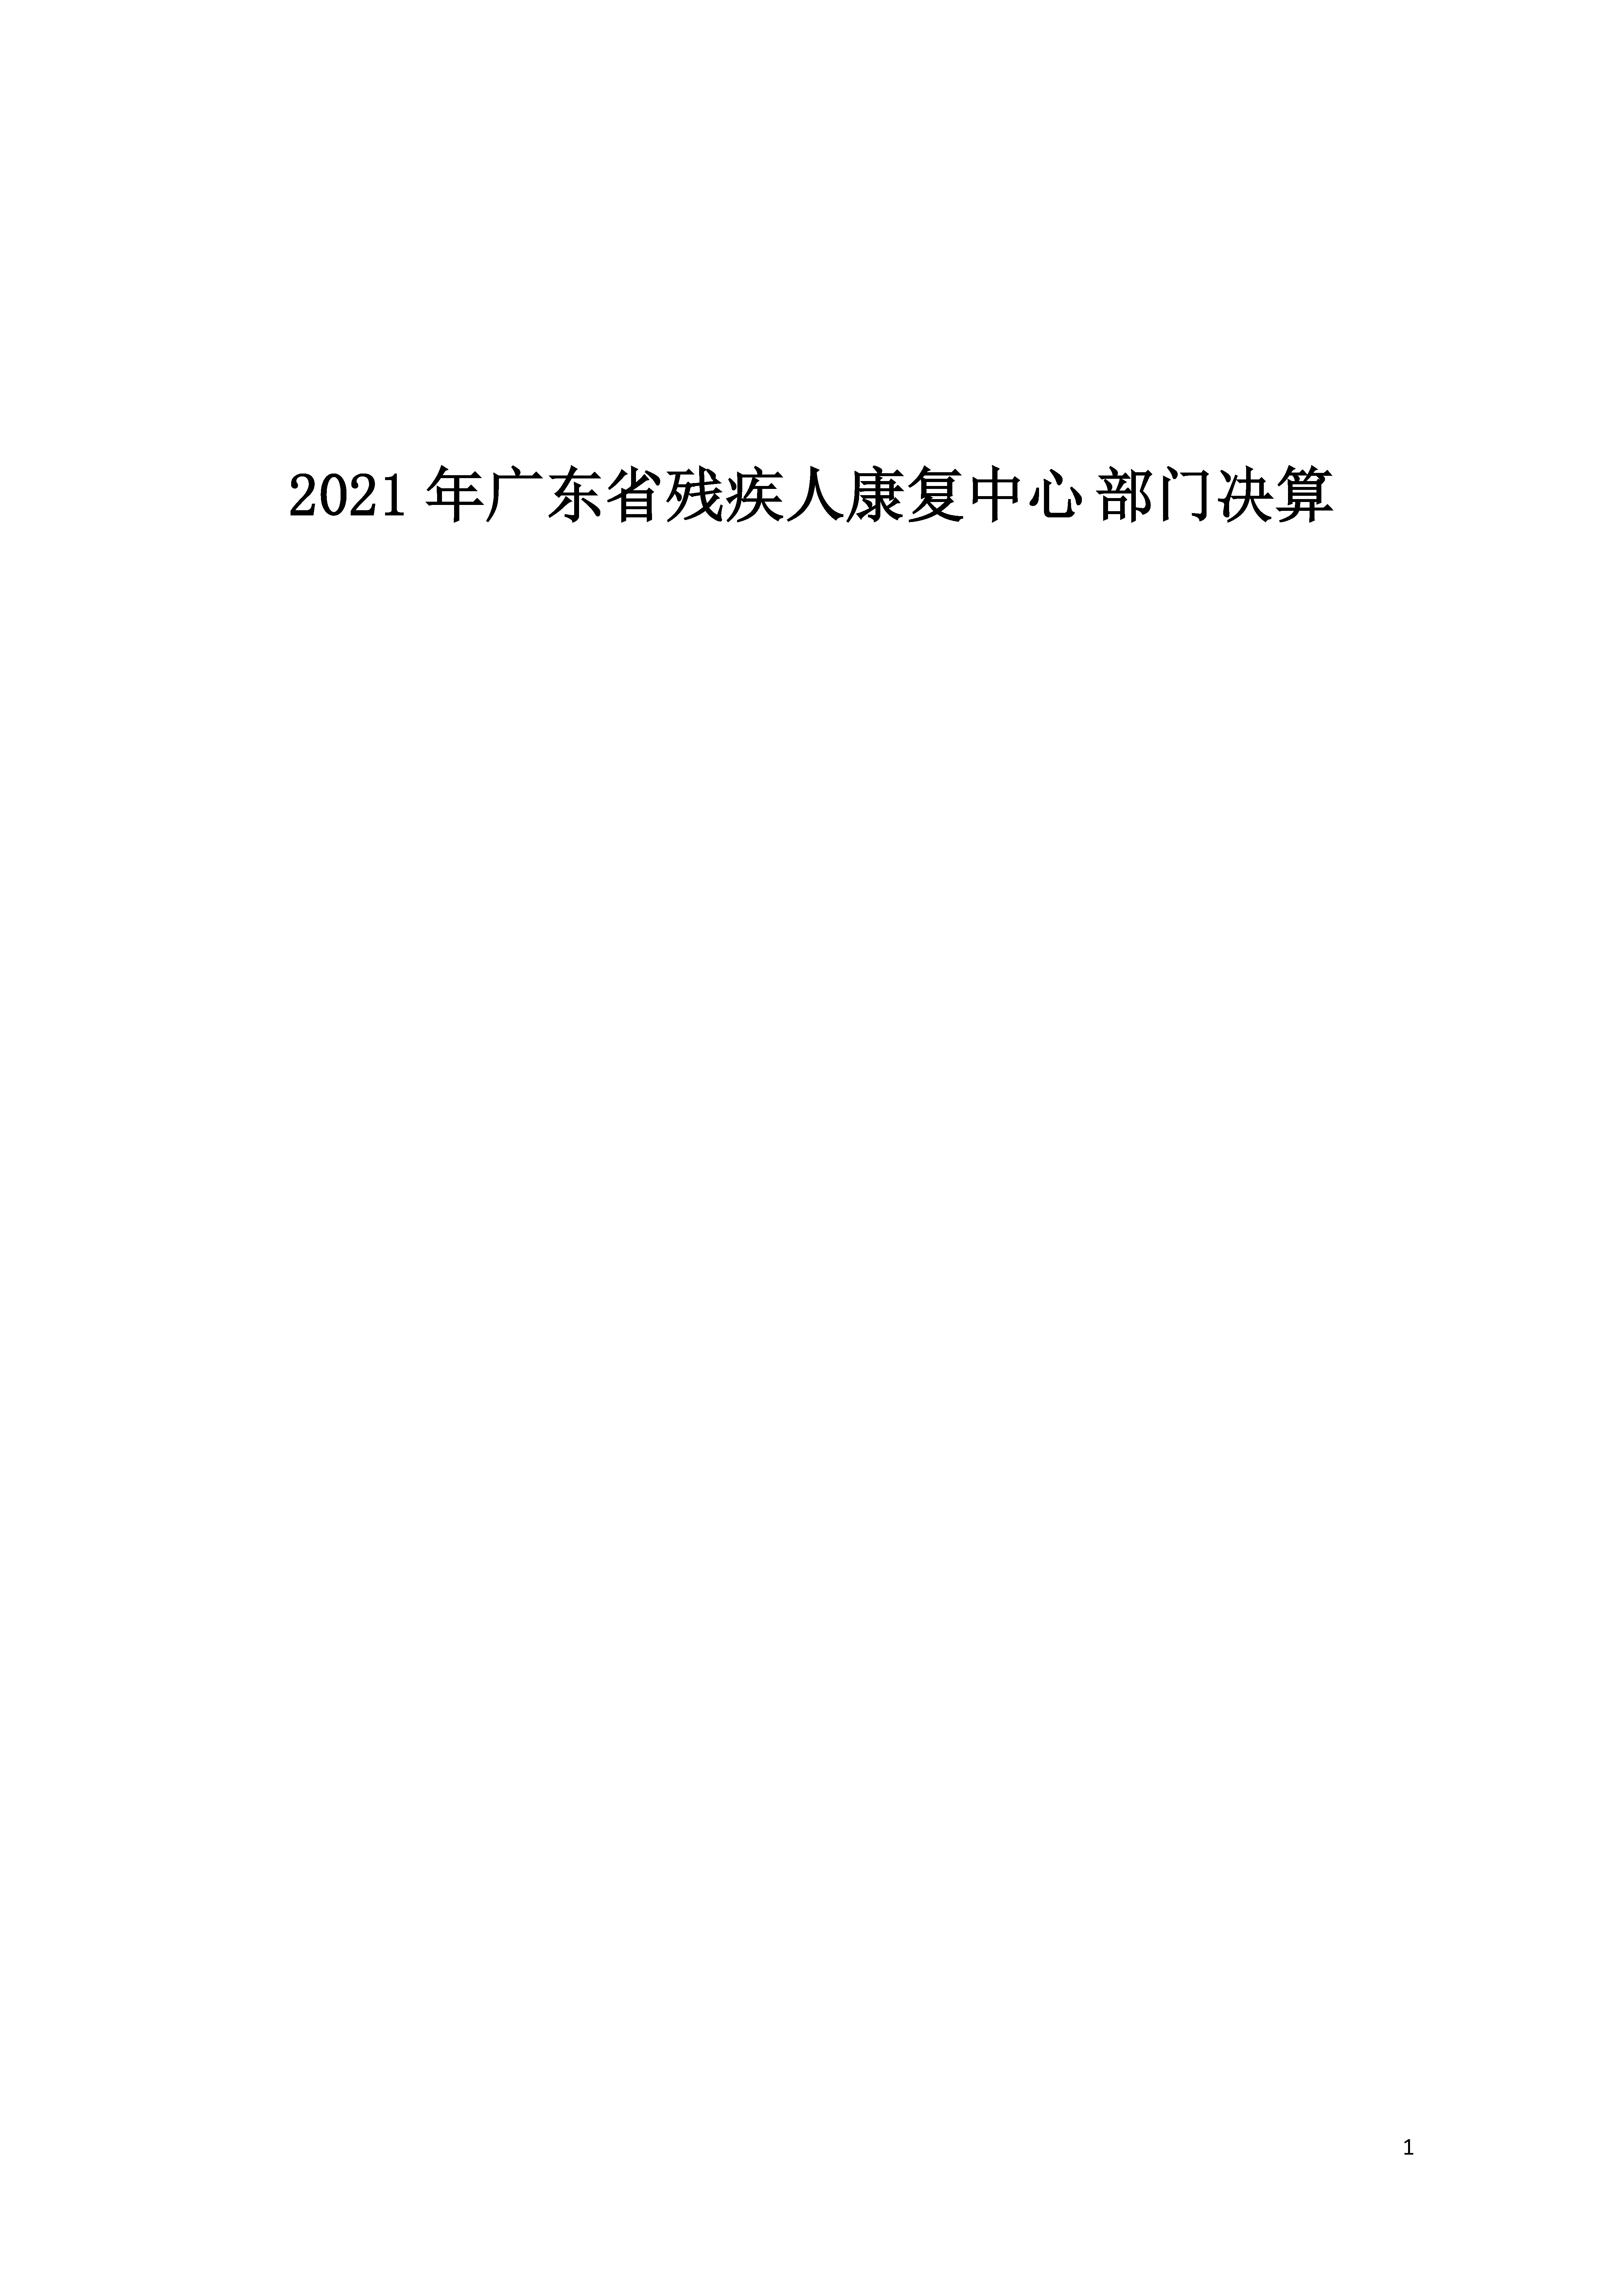 2021年广东省残疾人康复中心部门决算 0629_页面_01.jpg